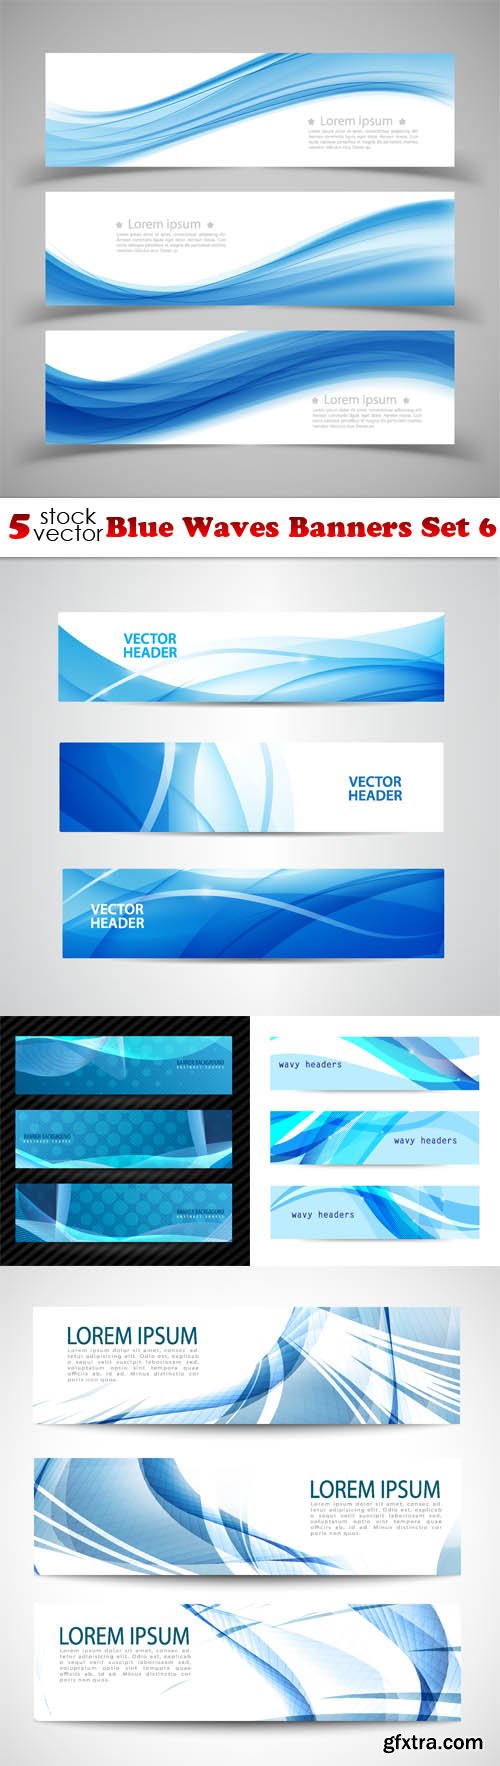 Vectors - Blue Waves Banners Set 6